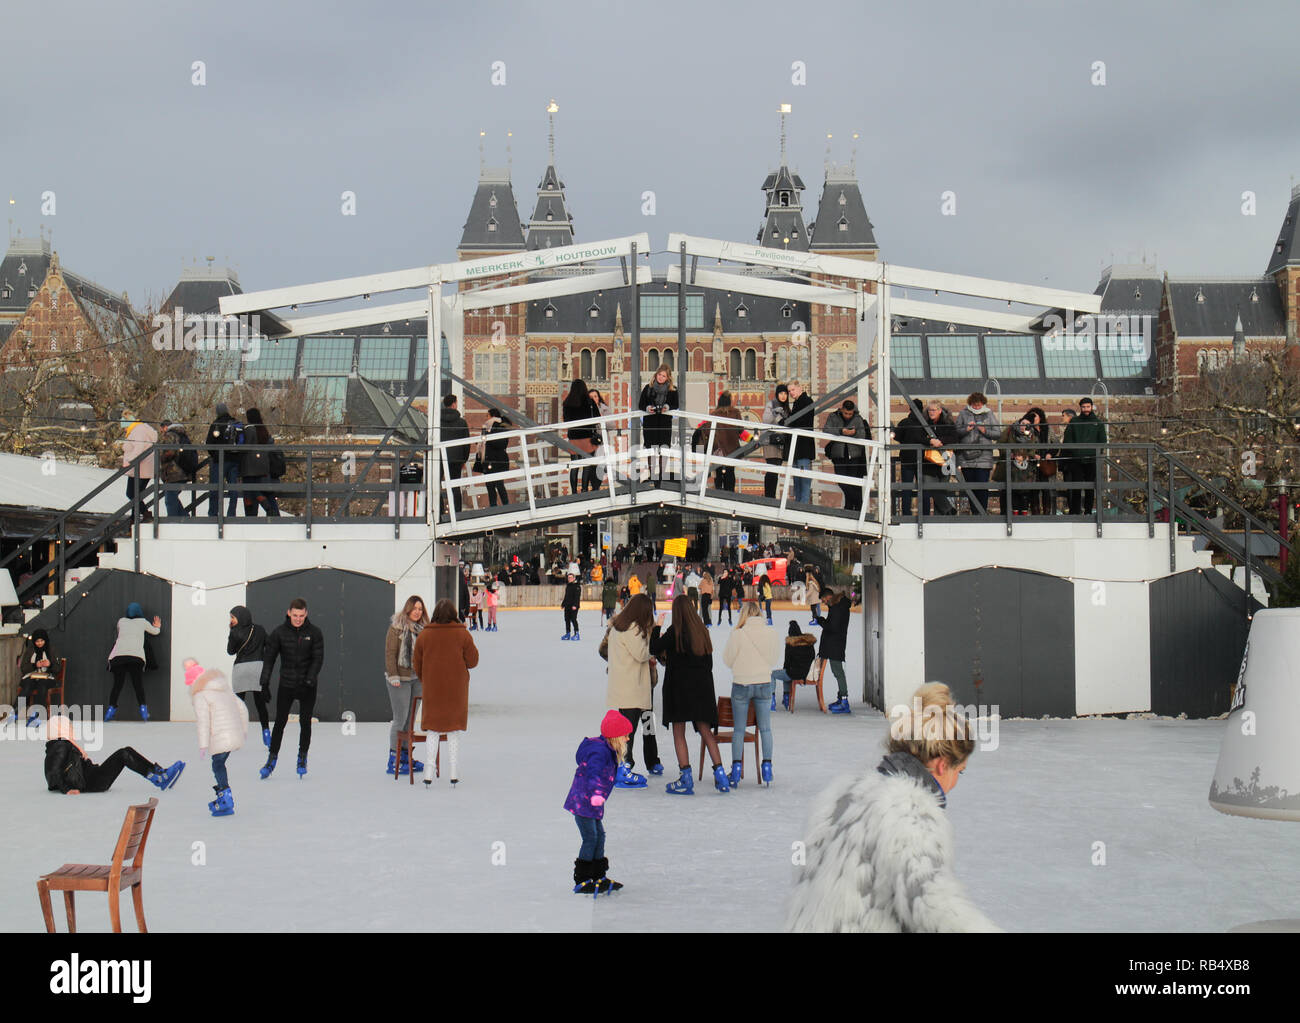 Patineurs sur glace à la place du musée, Amsterdam, en décembre Banque D'Images